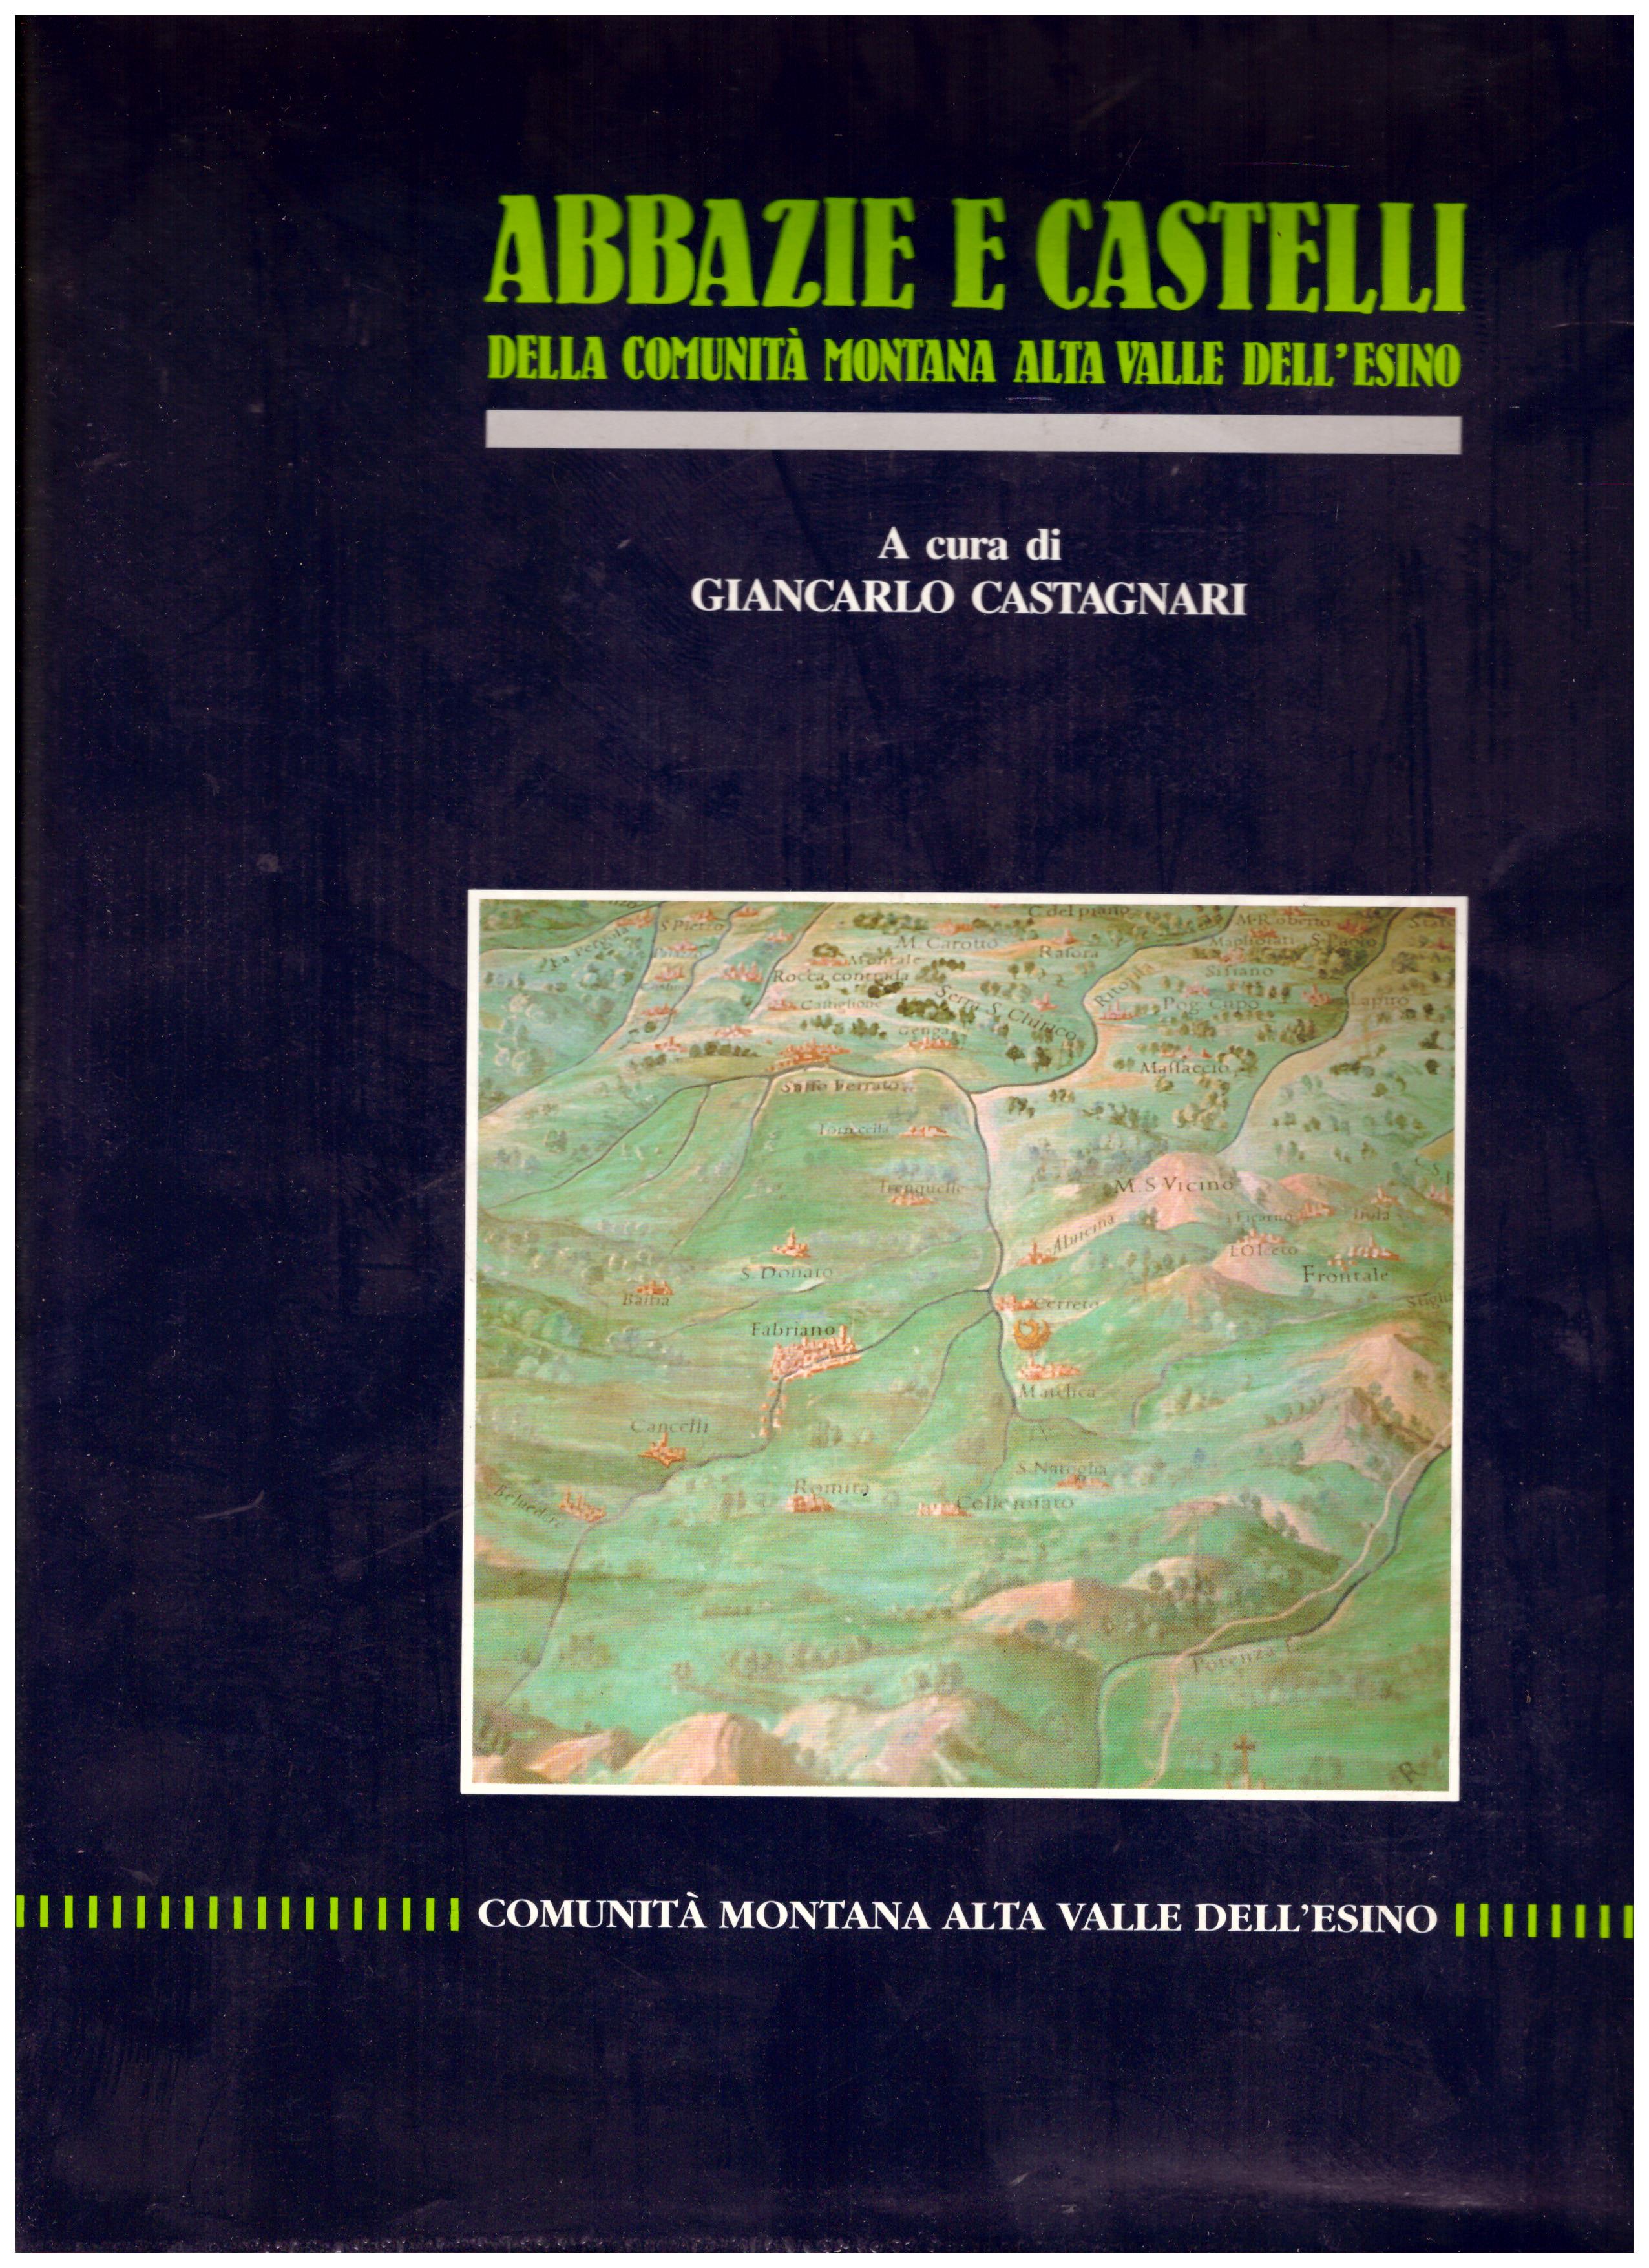 Titolo: Abbazie e castelli della comunità montana dell'alta valle dell'Esino Autore : AA.VV. A cura di Giancarlo Castagnari  Editore: tecnostampa Recanati 1990